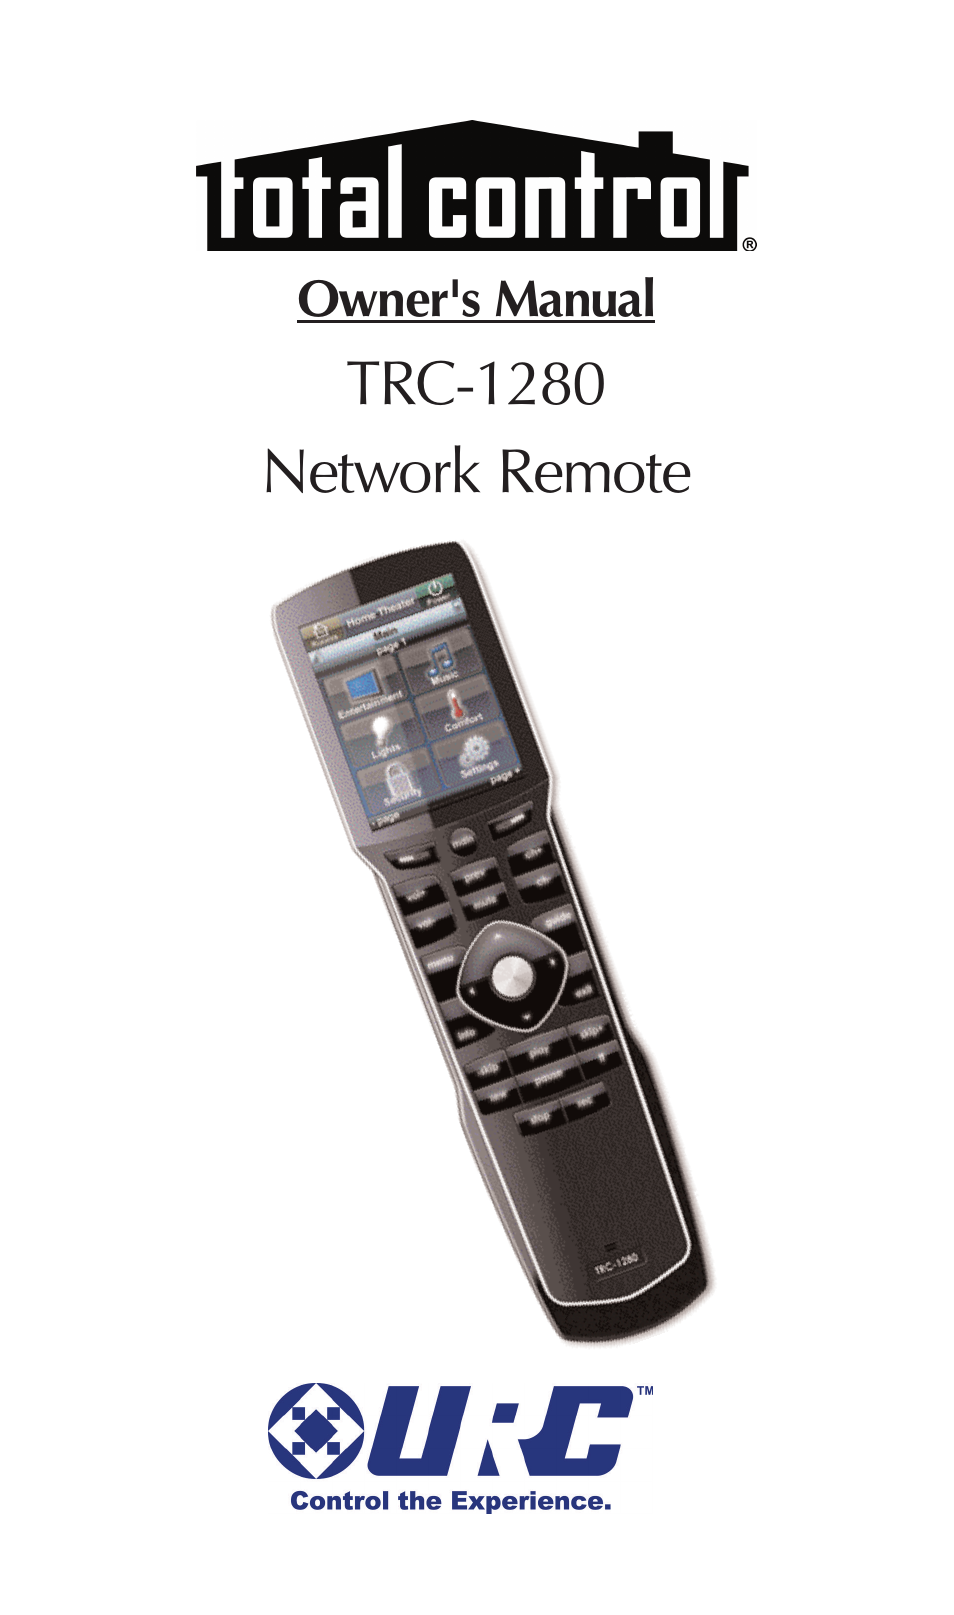 TRC-1280